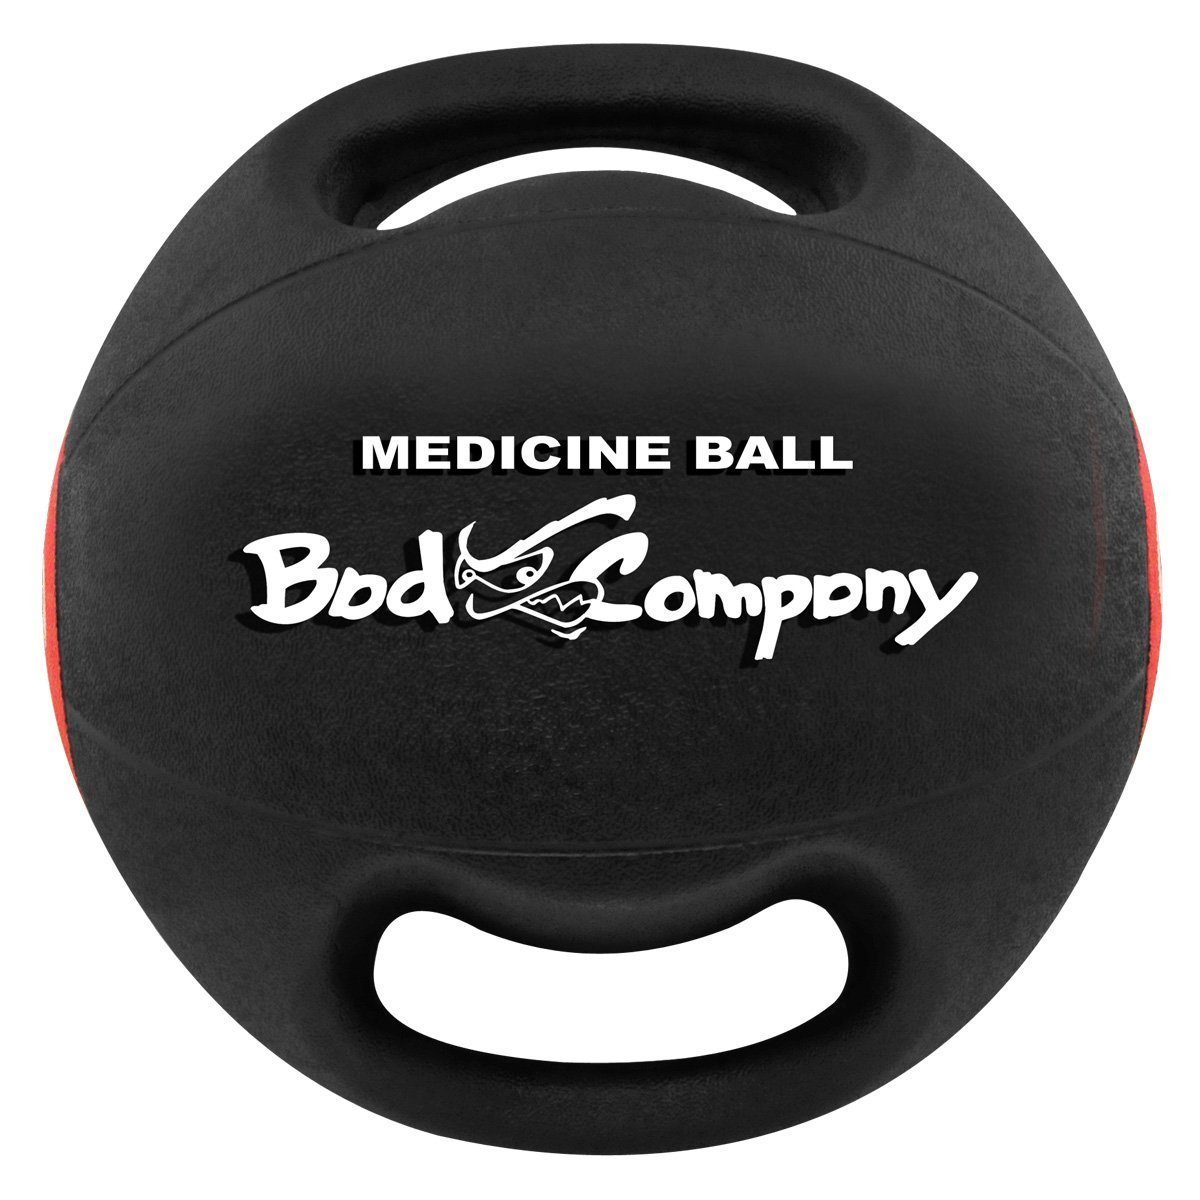 Bad Medizinball Company